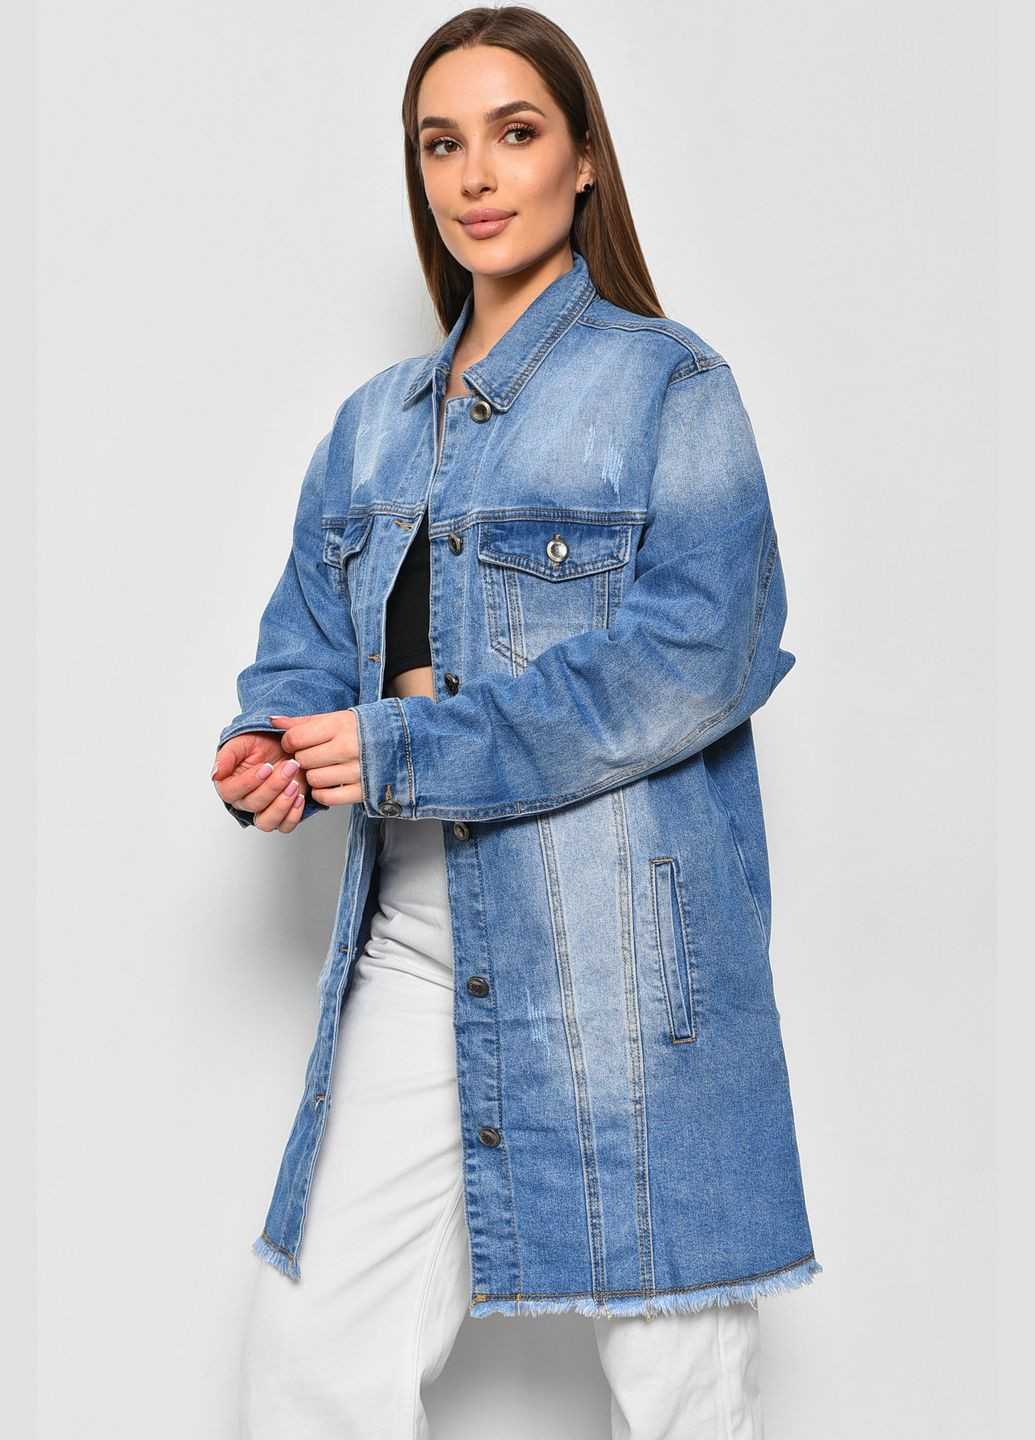 Голубой женский джинсовка женская удлиненная синего цвета Let's Shop с орнаментом - демисезонный